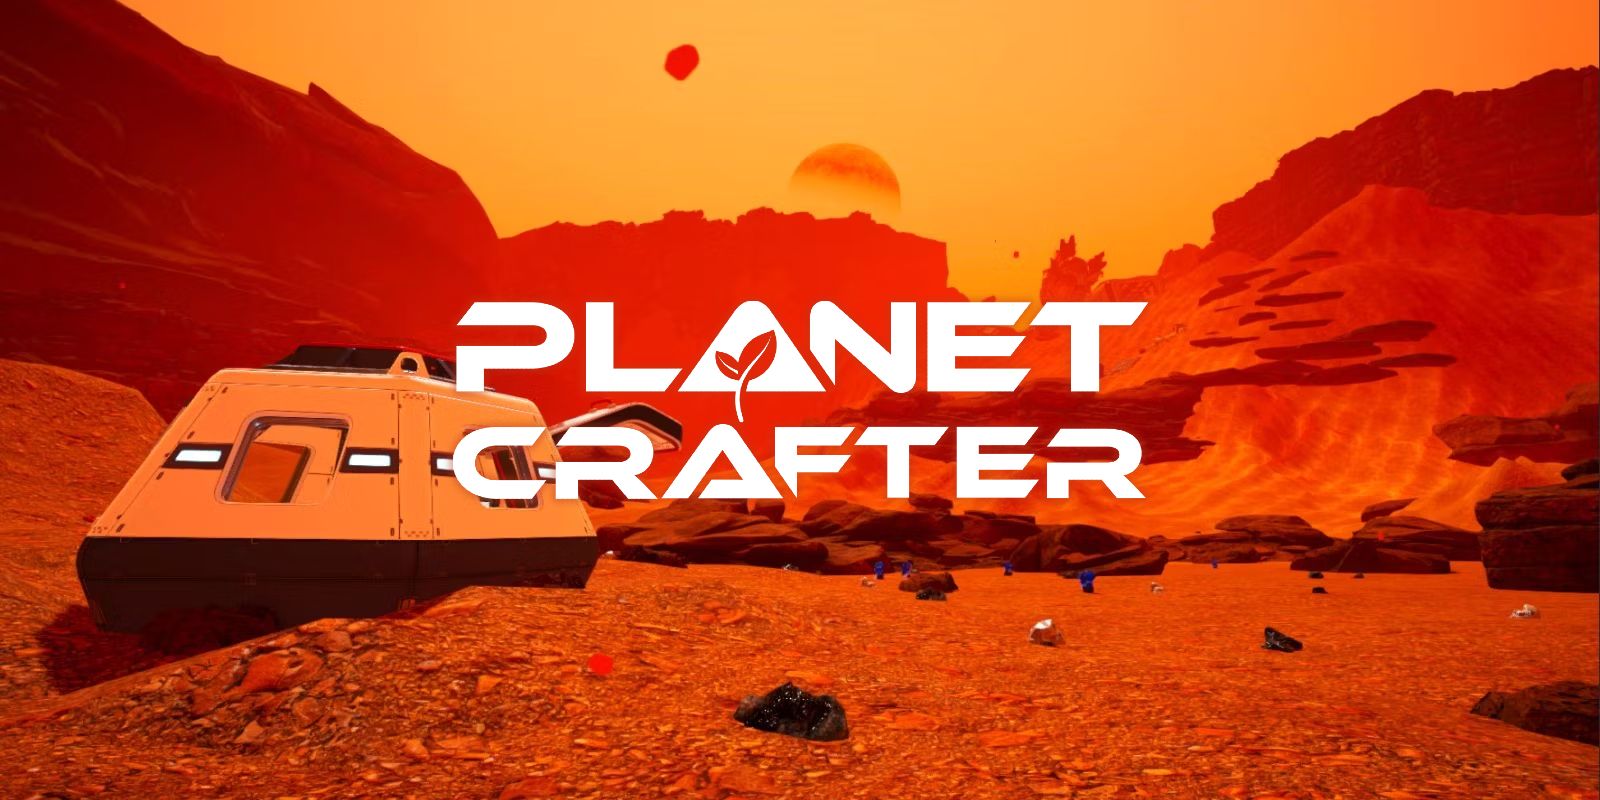 The Planet Crafter Review: "Una experiencia de terraformación inmersiva y gratificante"